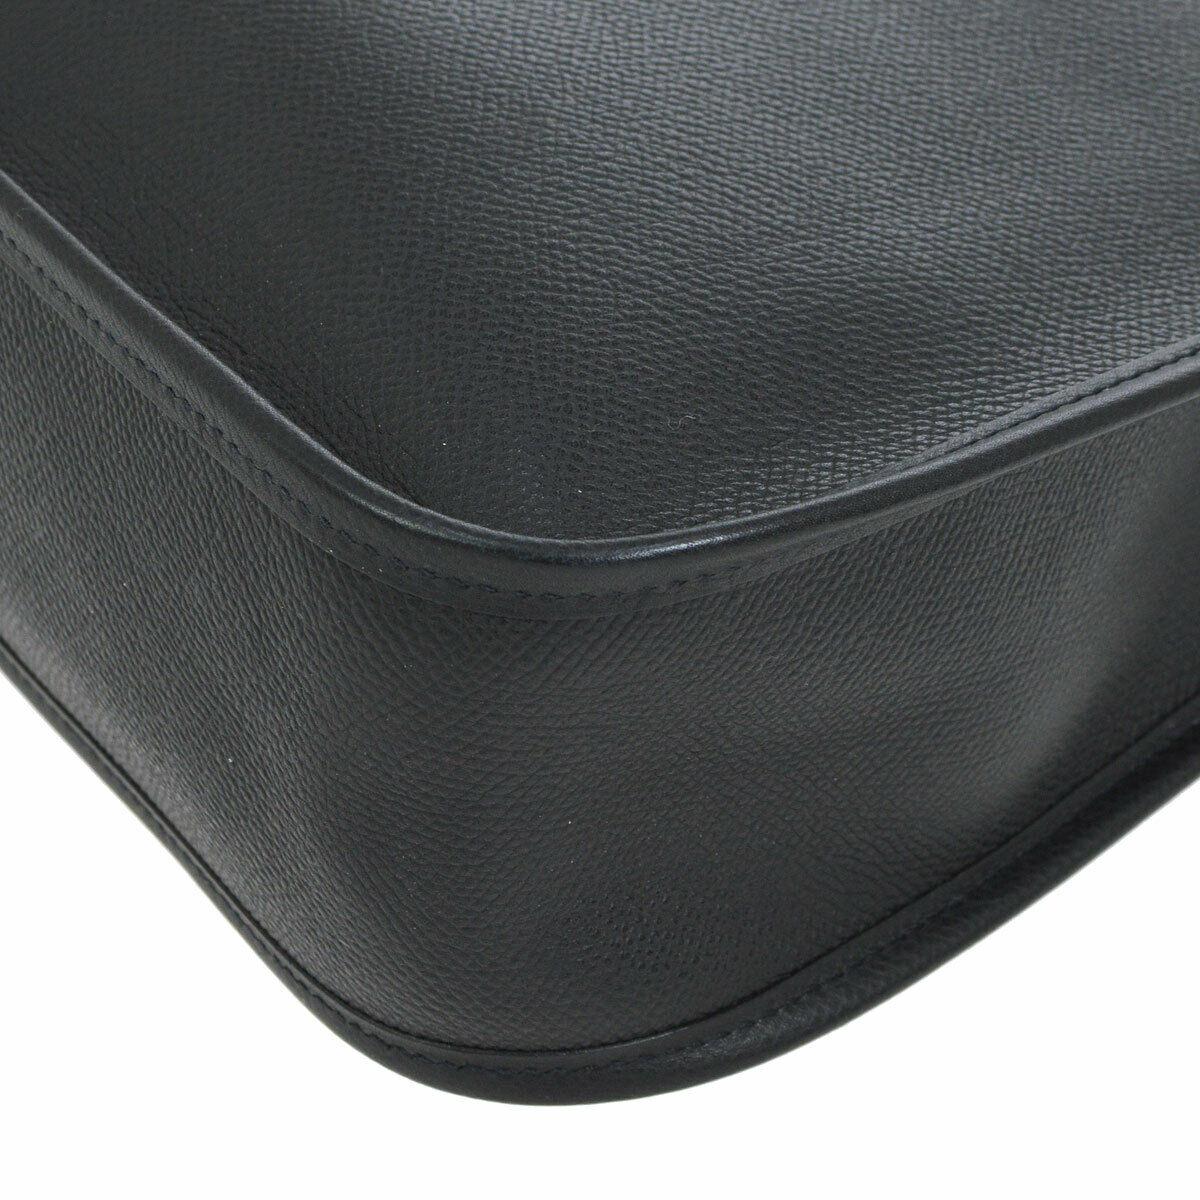 Hermes Black Leather Silver Toggle Men's Women's Carryall Shoulder Bag 1